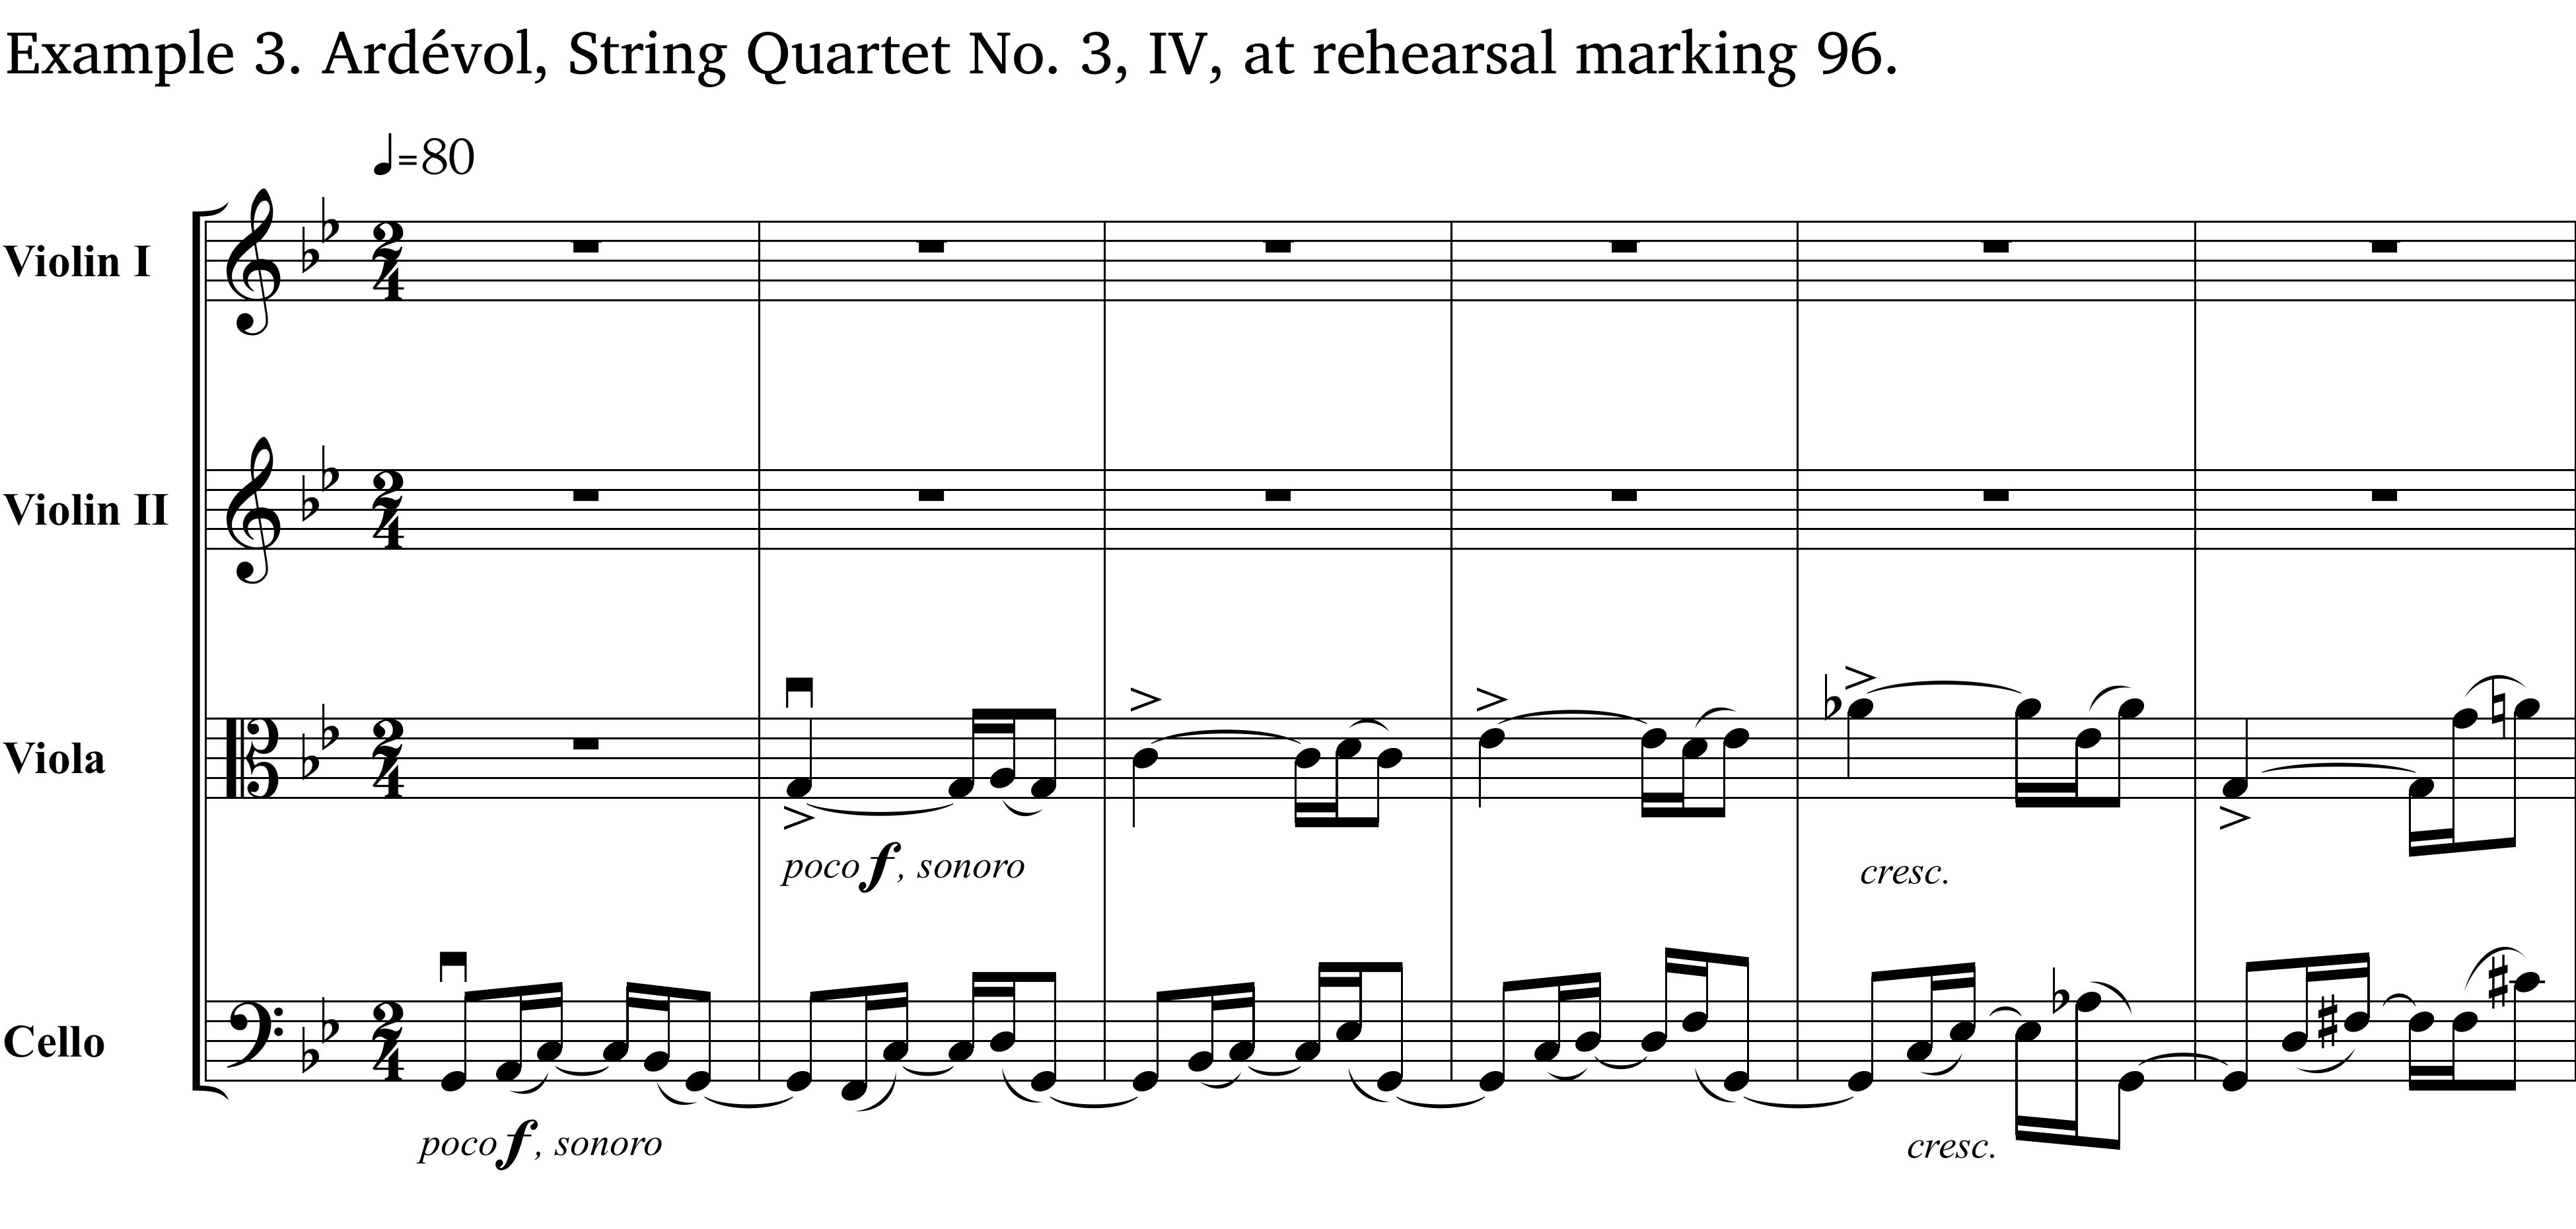 Example 3, Ardévol Quartet